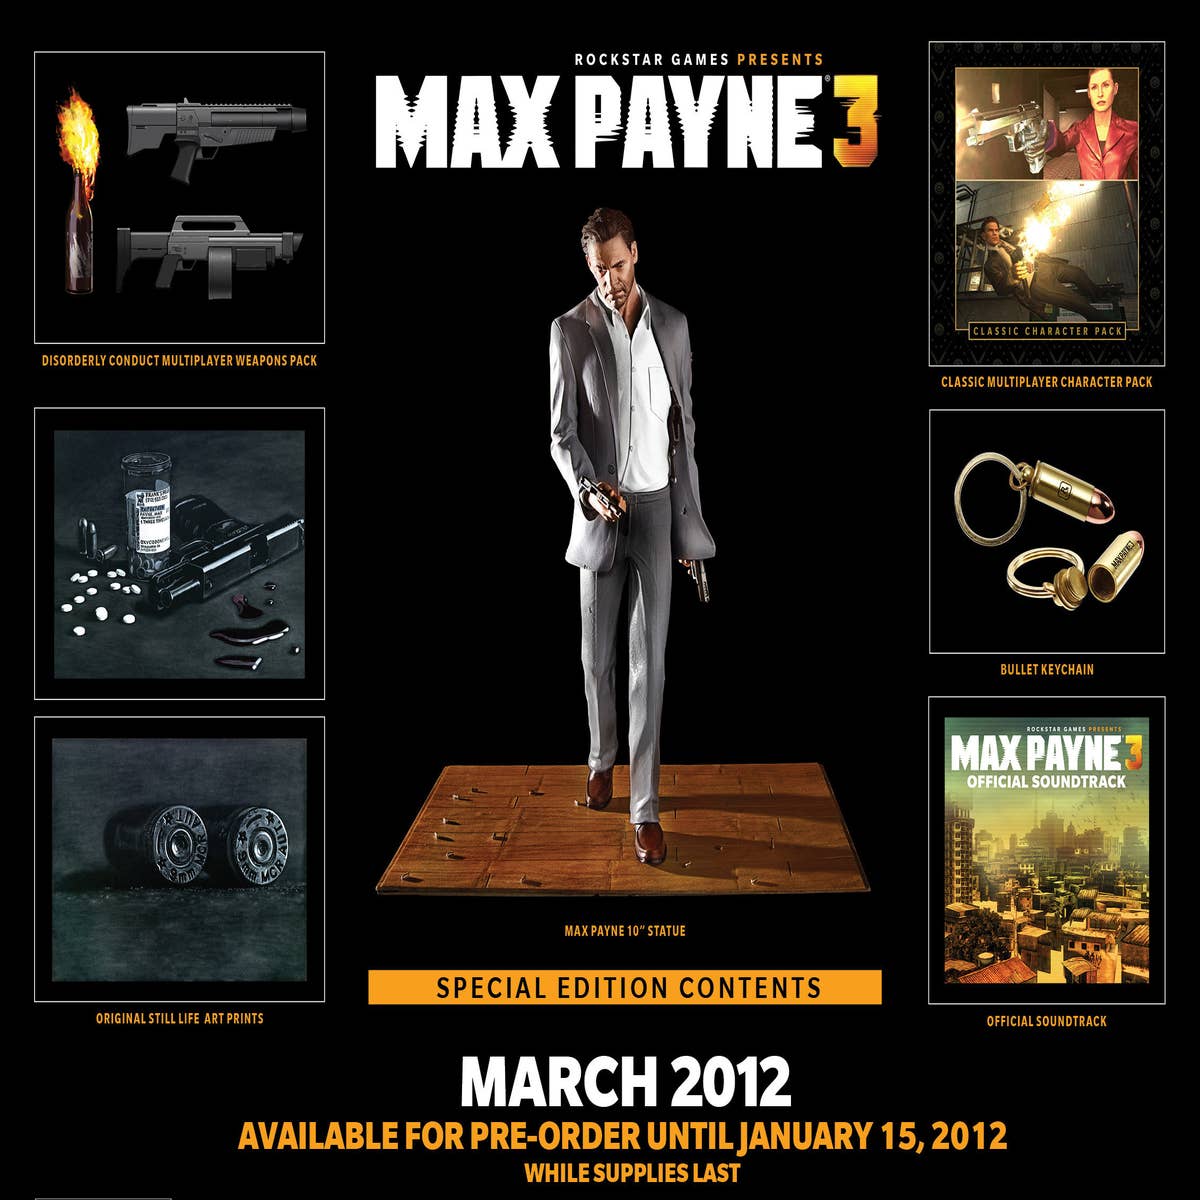 MAX PAYNE 3 COMPLETE EDITION PC ENVIO DIGITAL